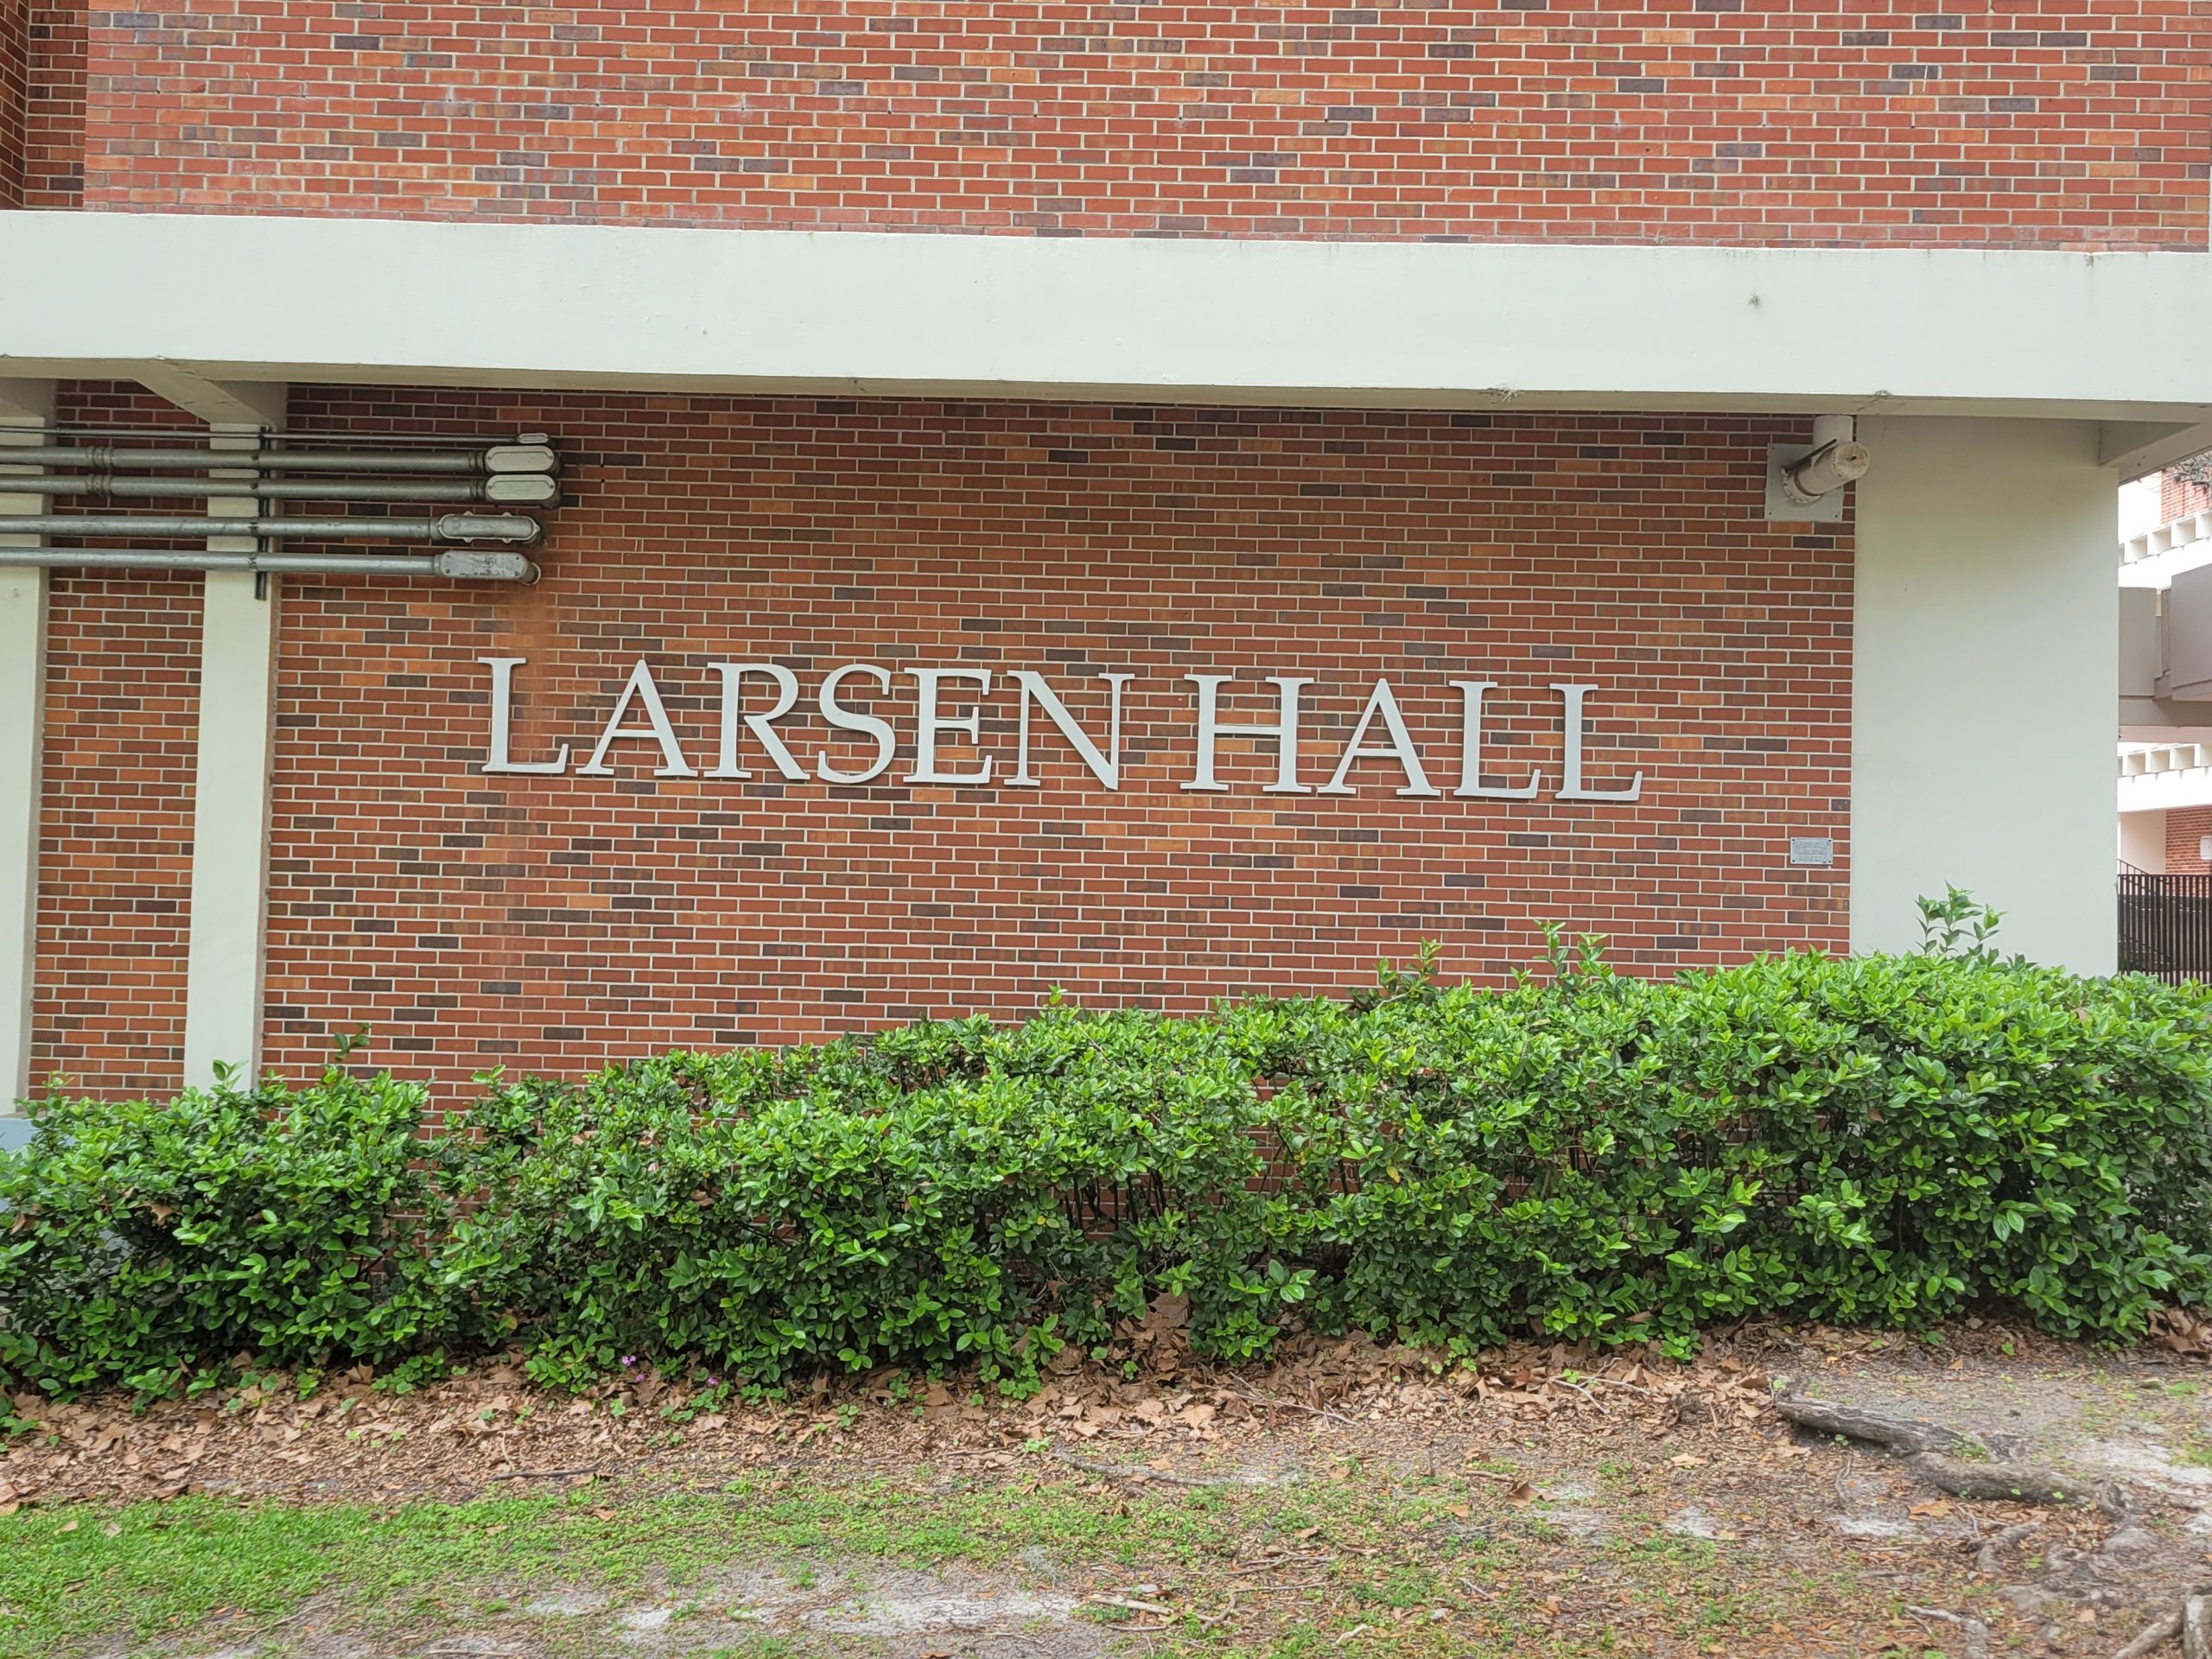 Larsen Hall